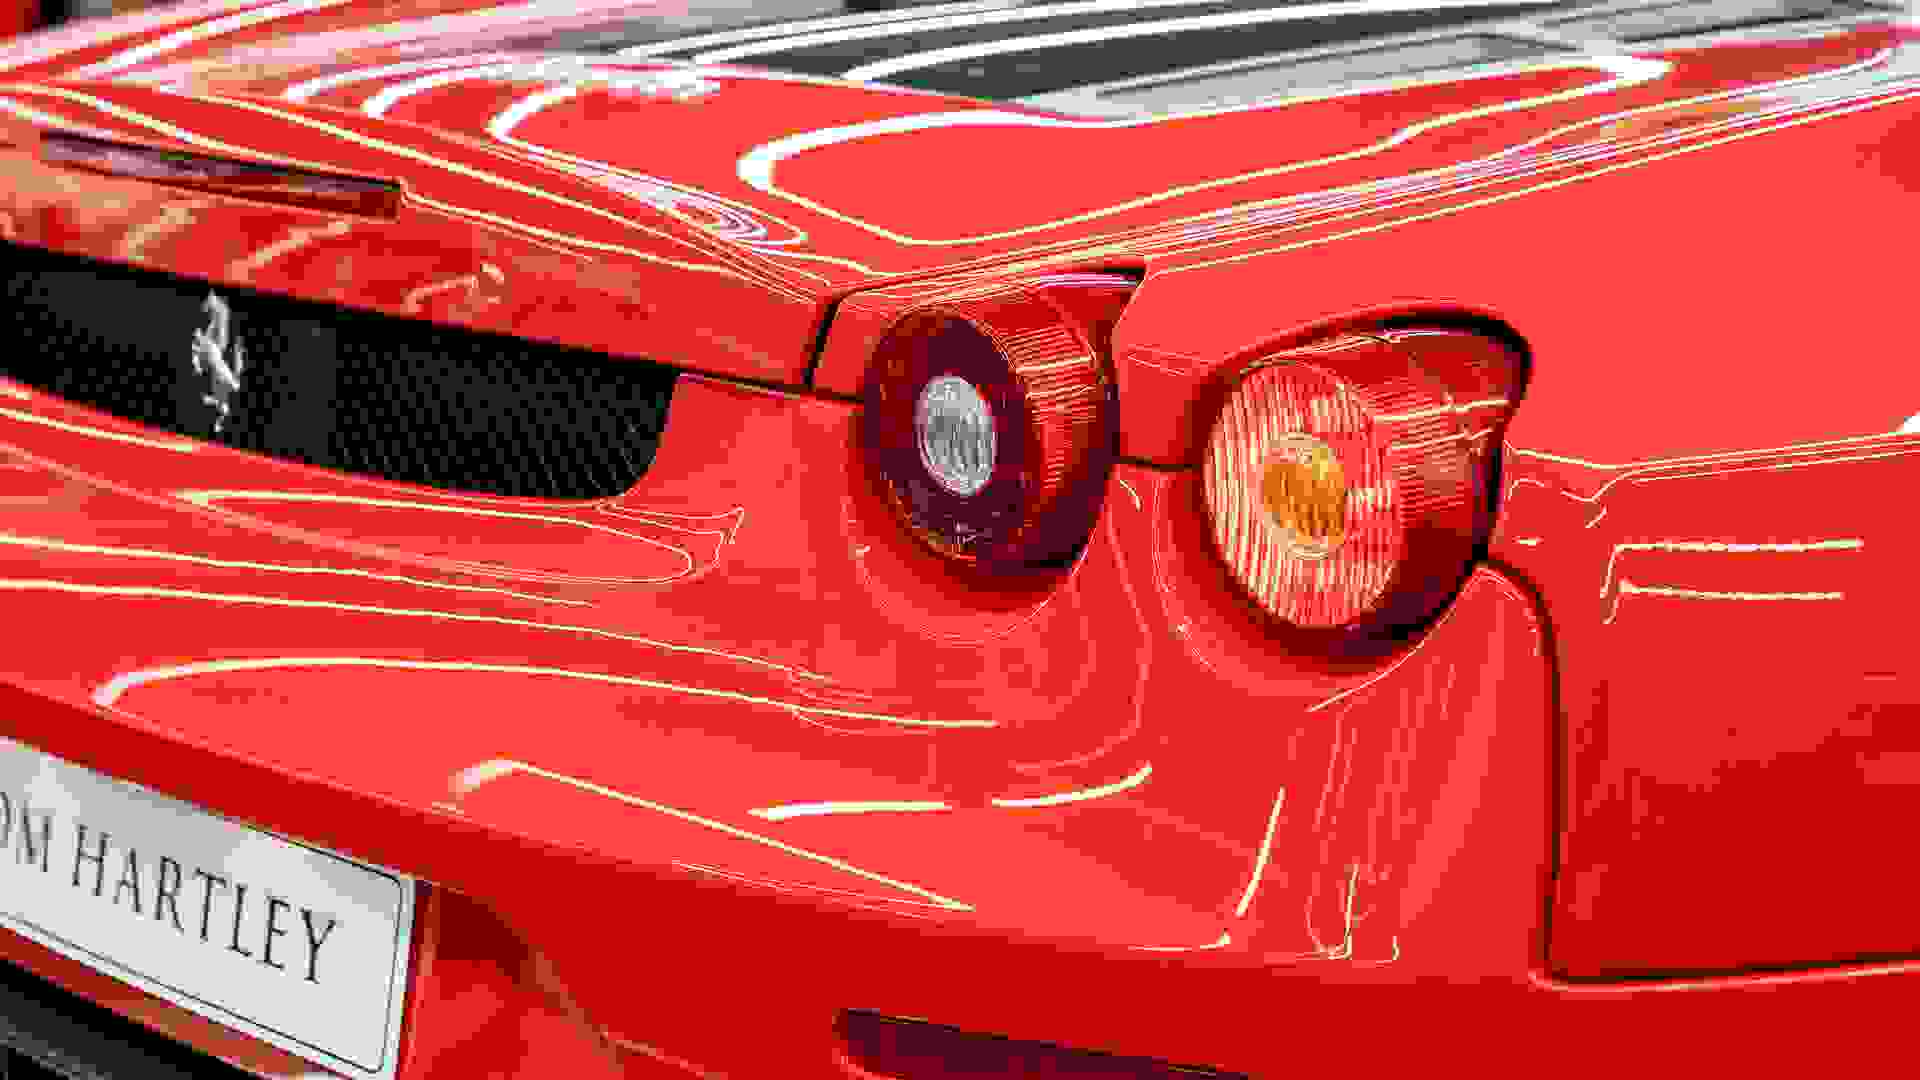 Ferrari F430 Photo 028d720e-a339-4c5c-a94d-52e2af8fd0b7.jpg